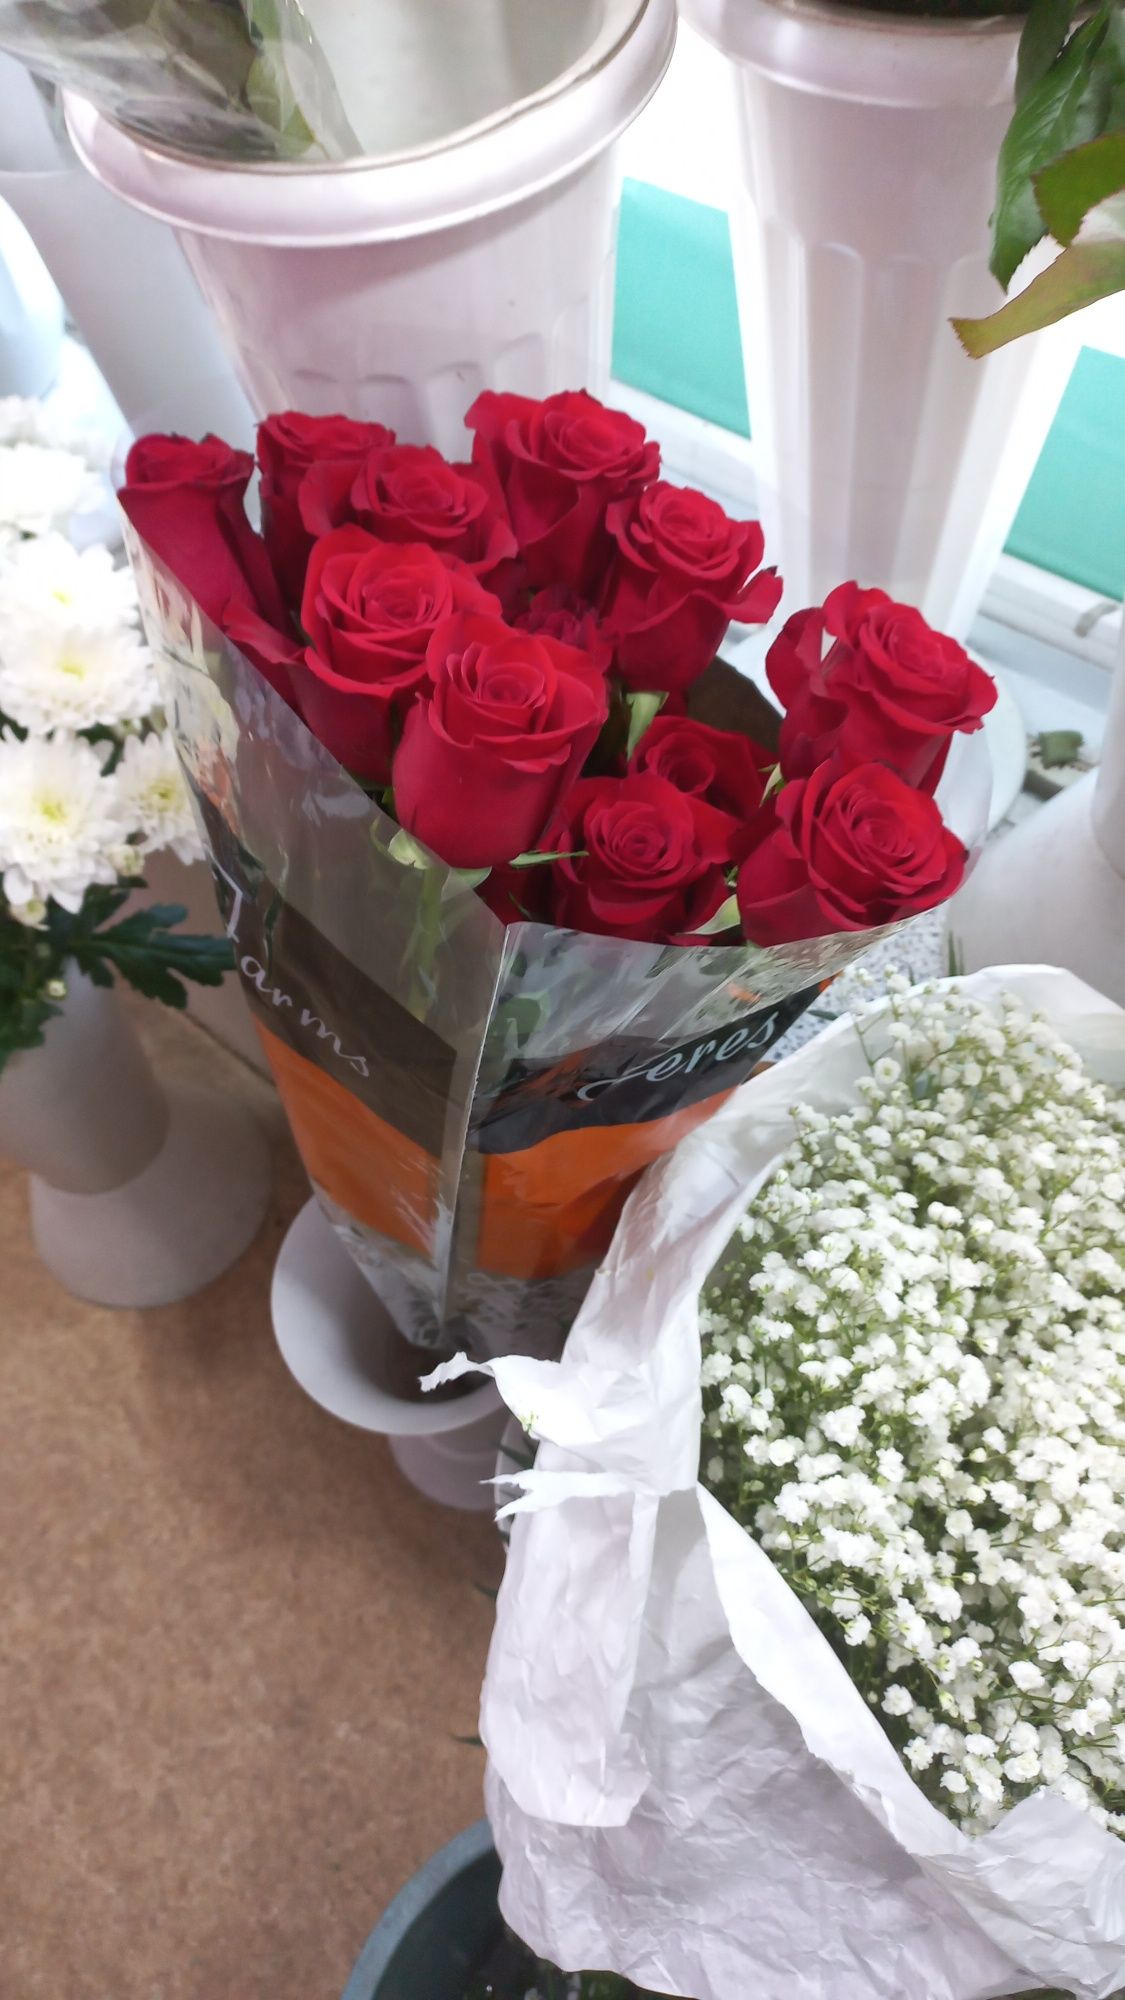 Бесплатная доставка цветов по городу  Семей  розы от 500тг